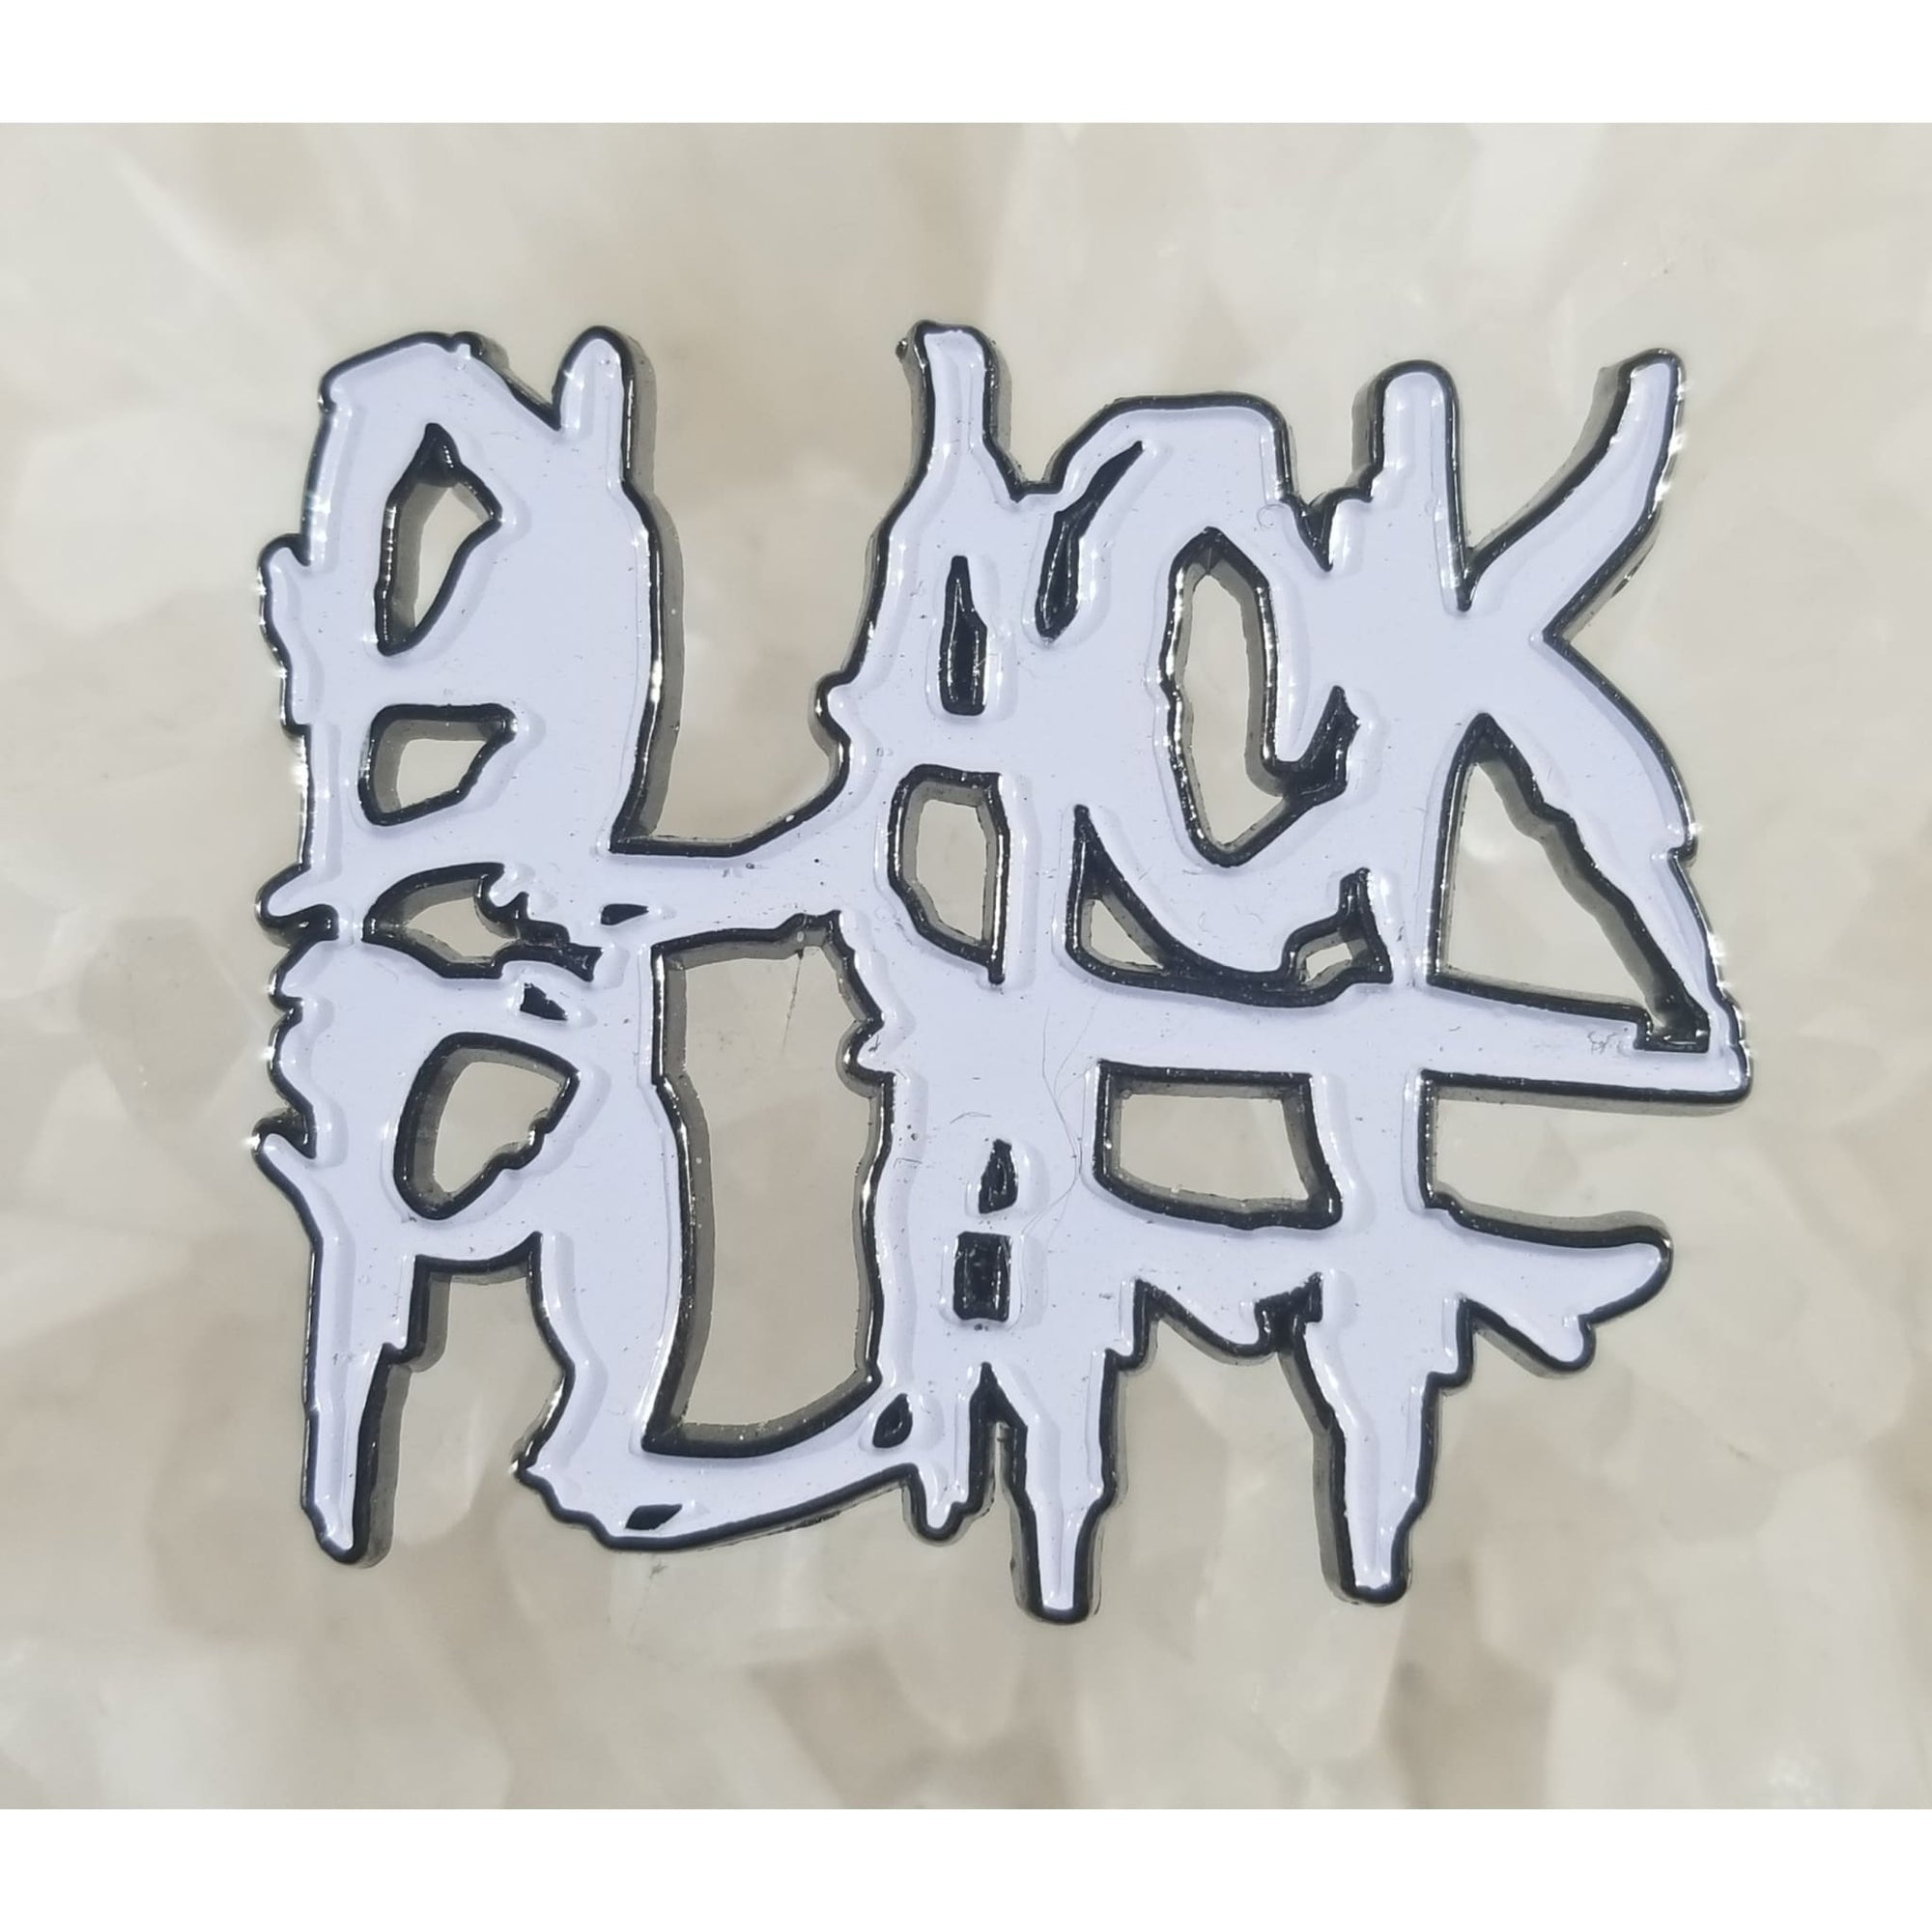 Black Fluff White Fluff LSD Acid Blotter Enamel Hat Pin - Enamel/Metal